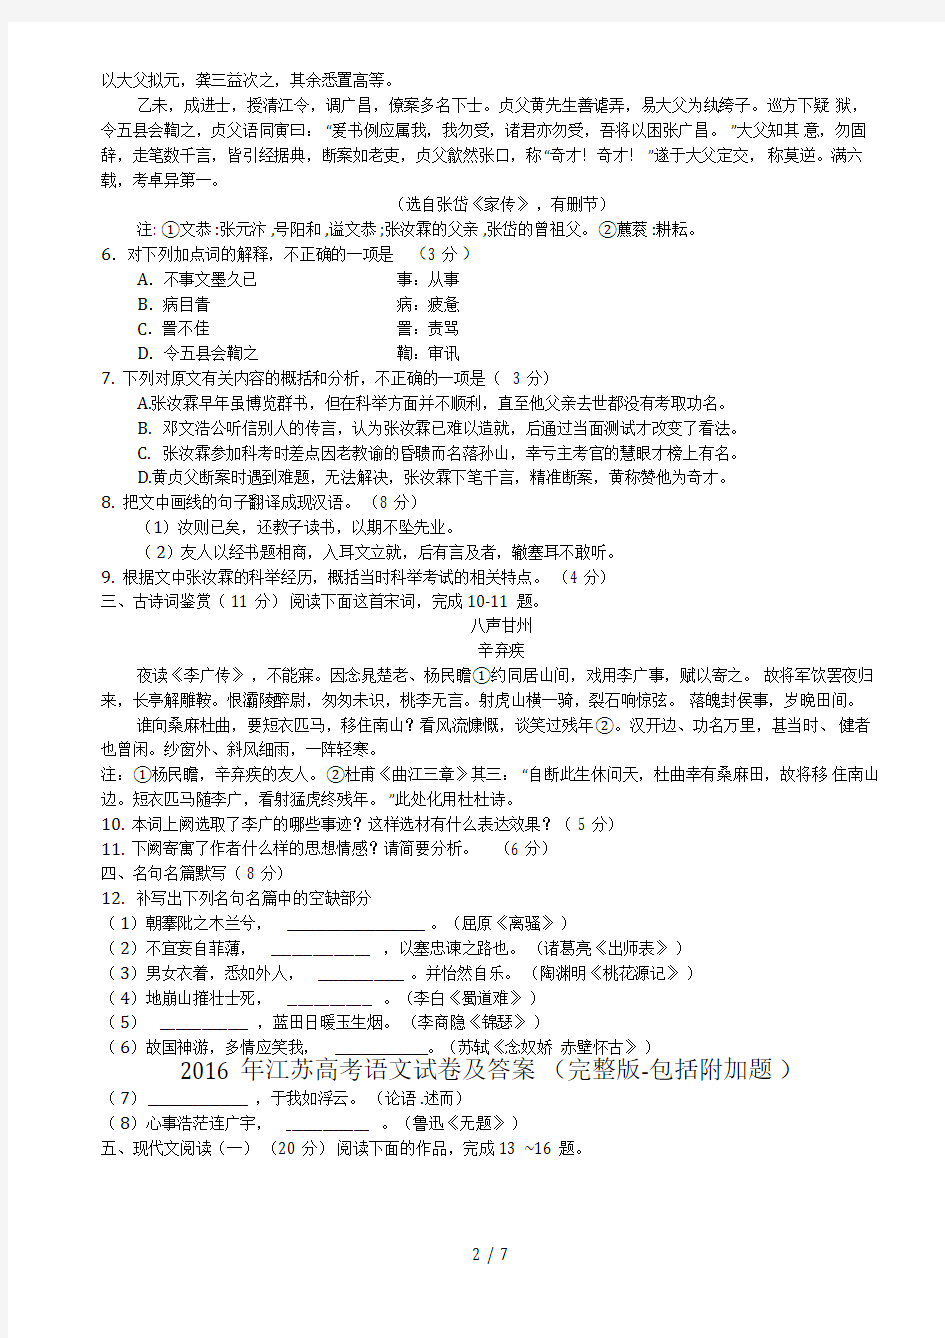 2016年江苏高考语文试卷及答案(完整版-包括附加题)